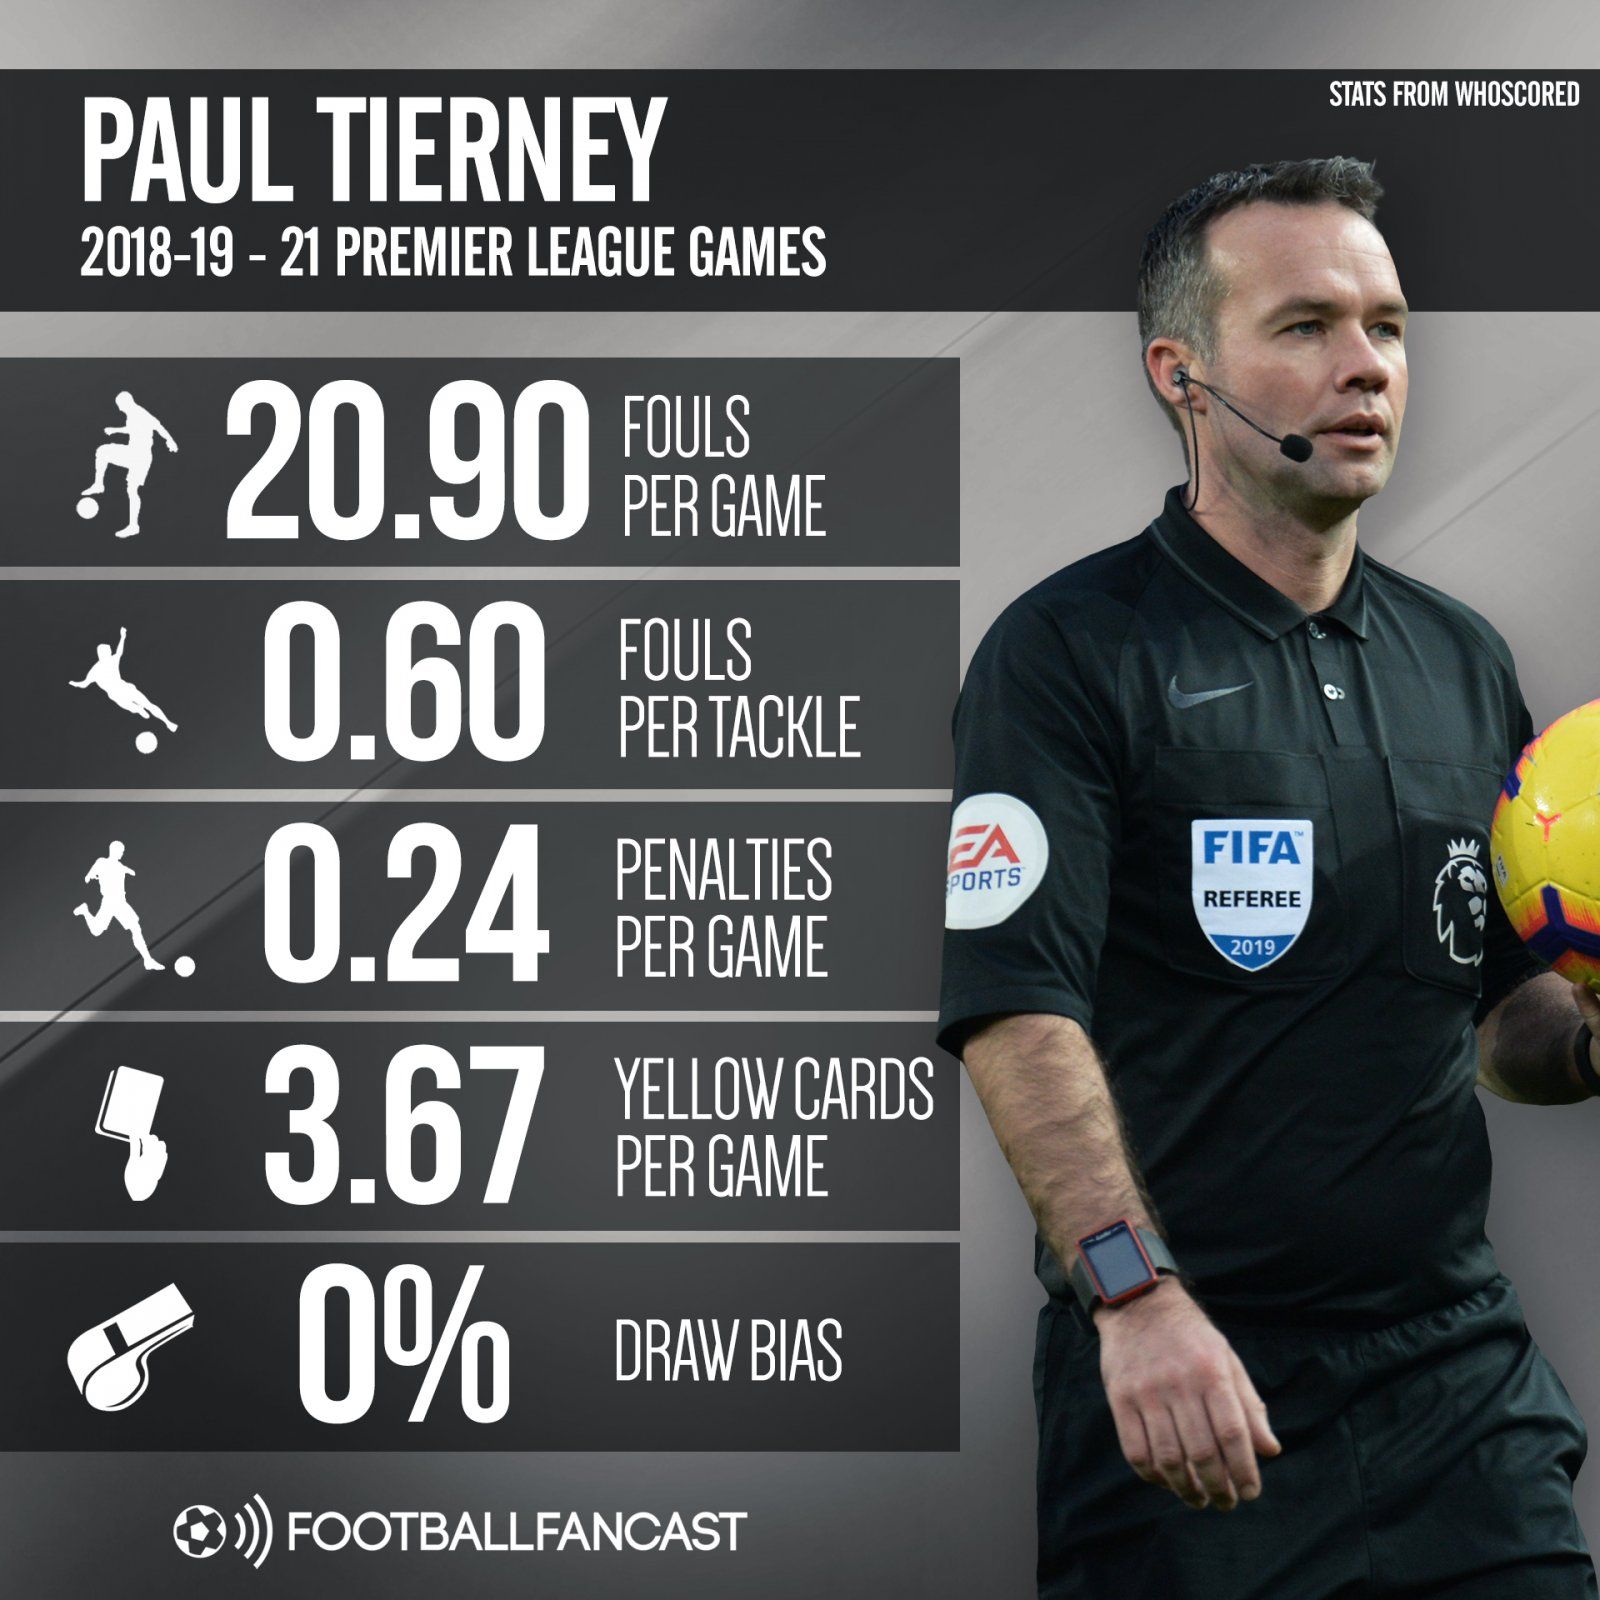 Paul Tierney 2018-19 - 21 Premier League games